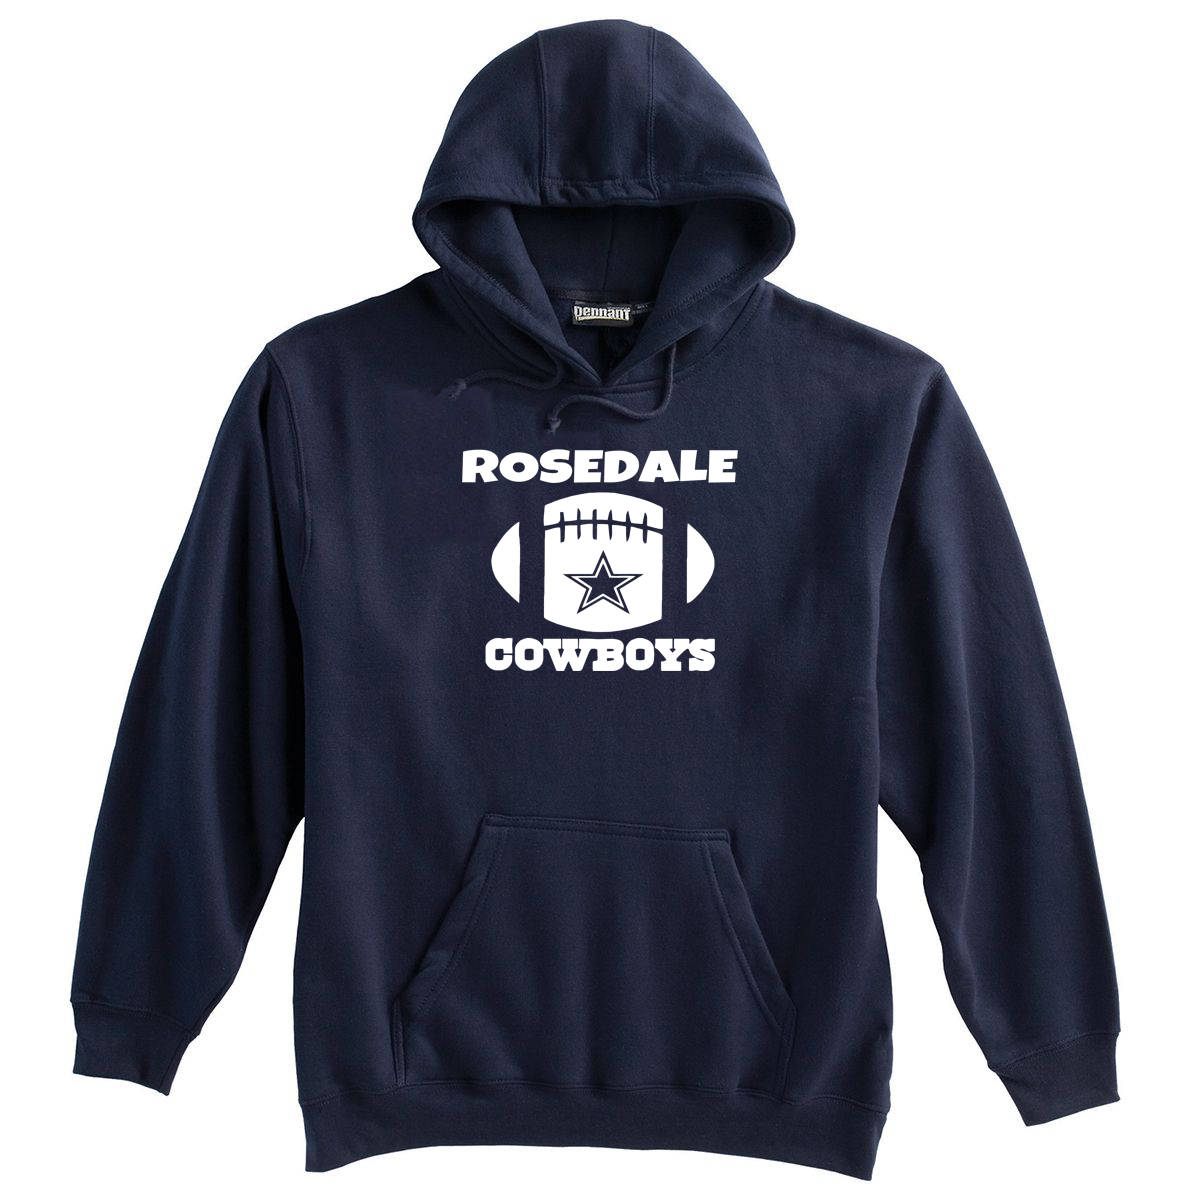 Rosedale Cowboys Sweatshirt